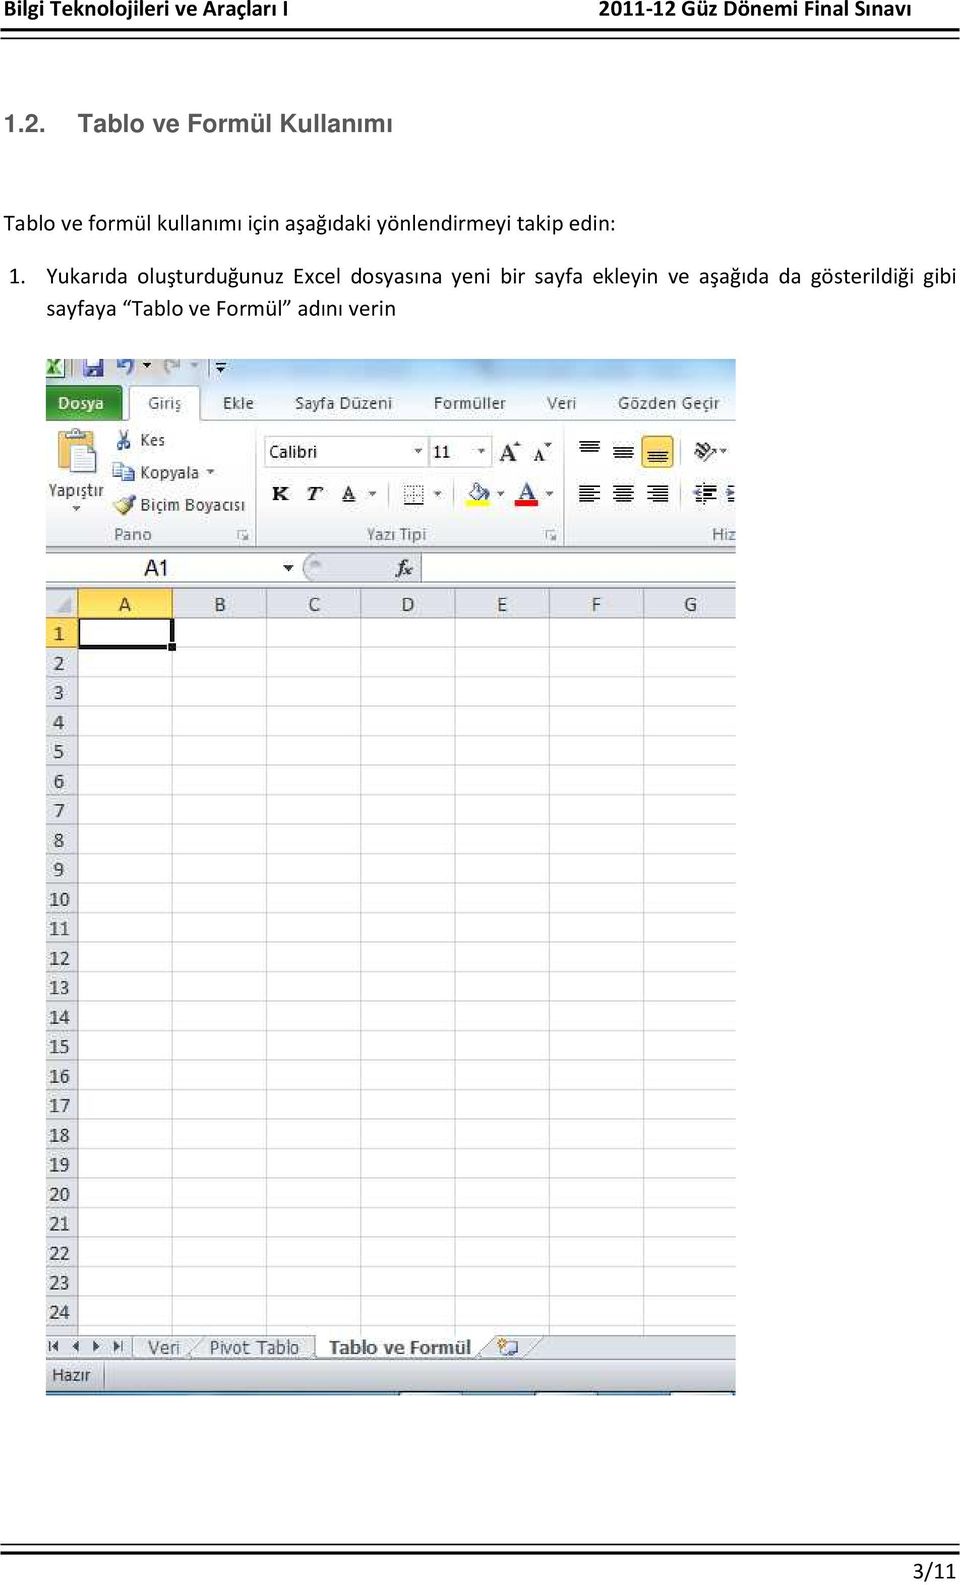 Yukarıda oluşturduğunuz Excel dosyasına yeni bir sayfa